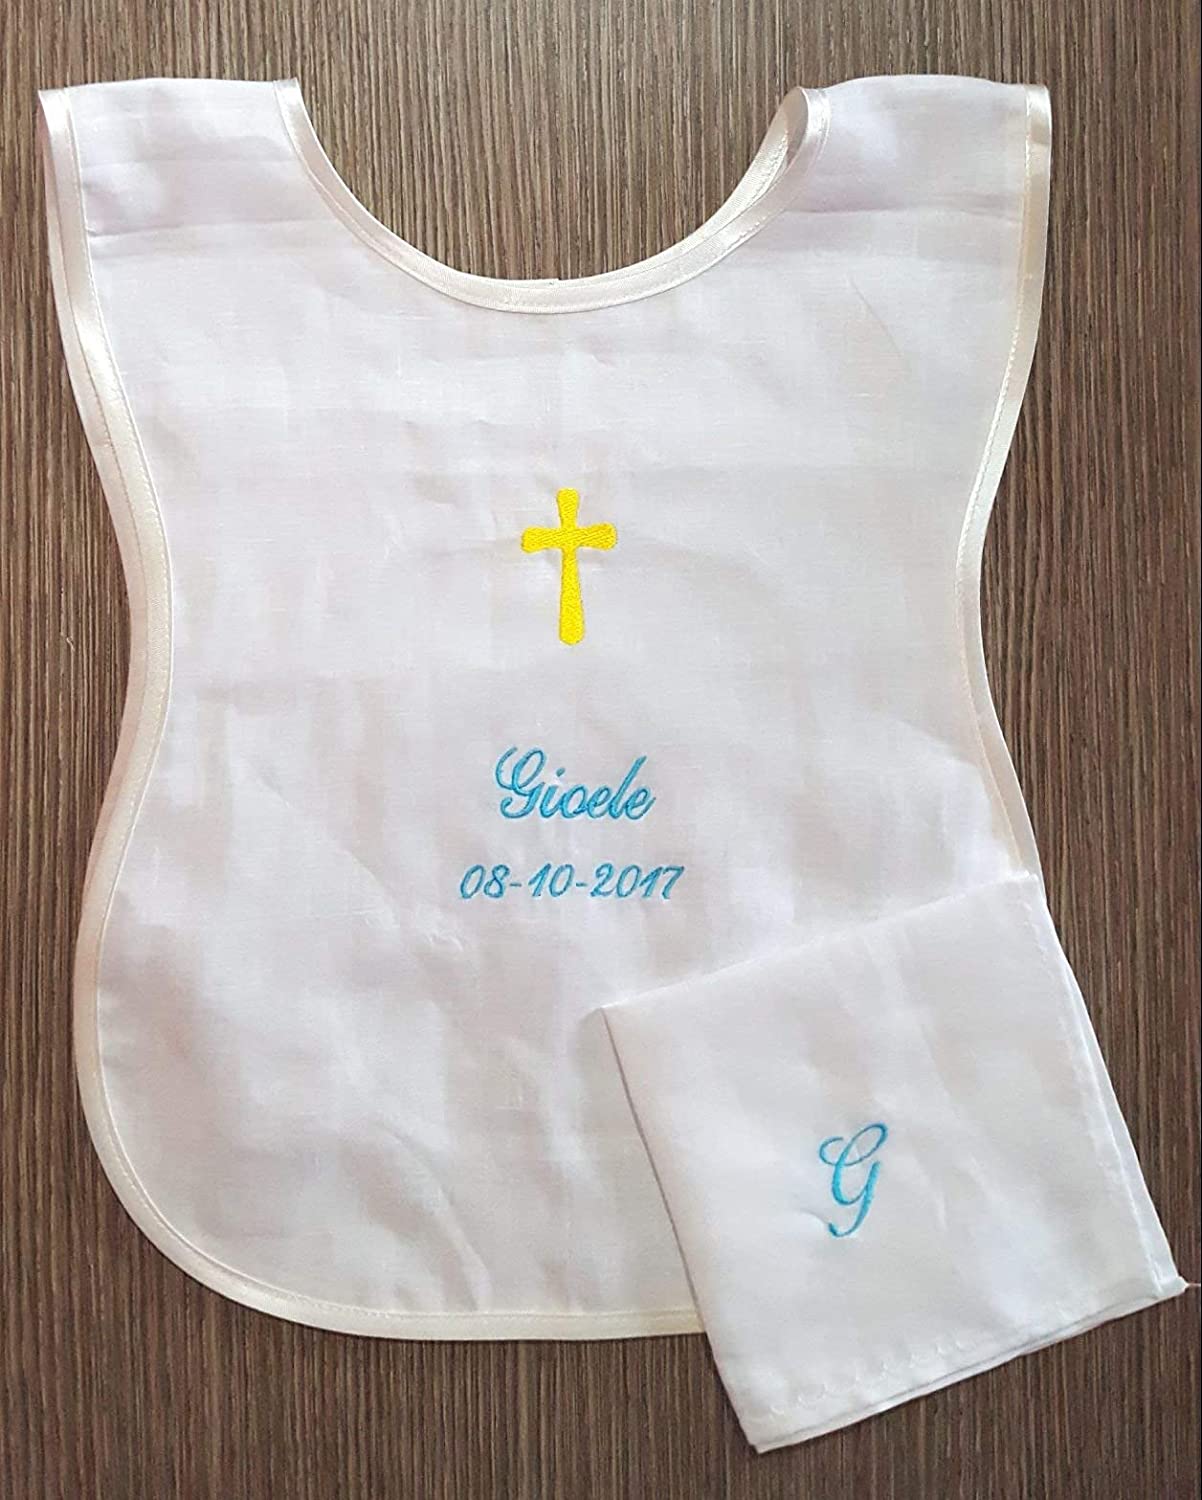 Crociedelizie, camicino camicina camiciola veste vestina battesimale personalizzata lino ricamata battesimo